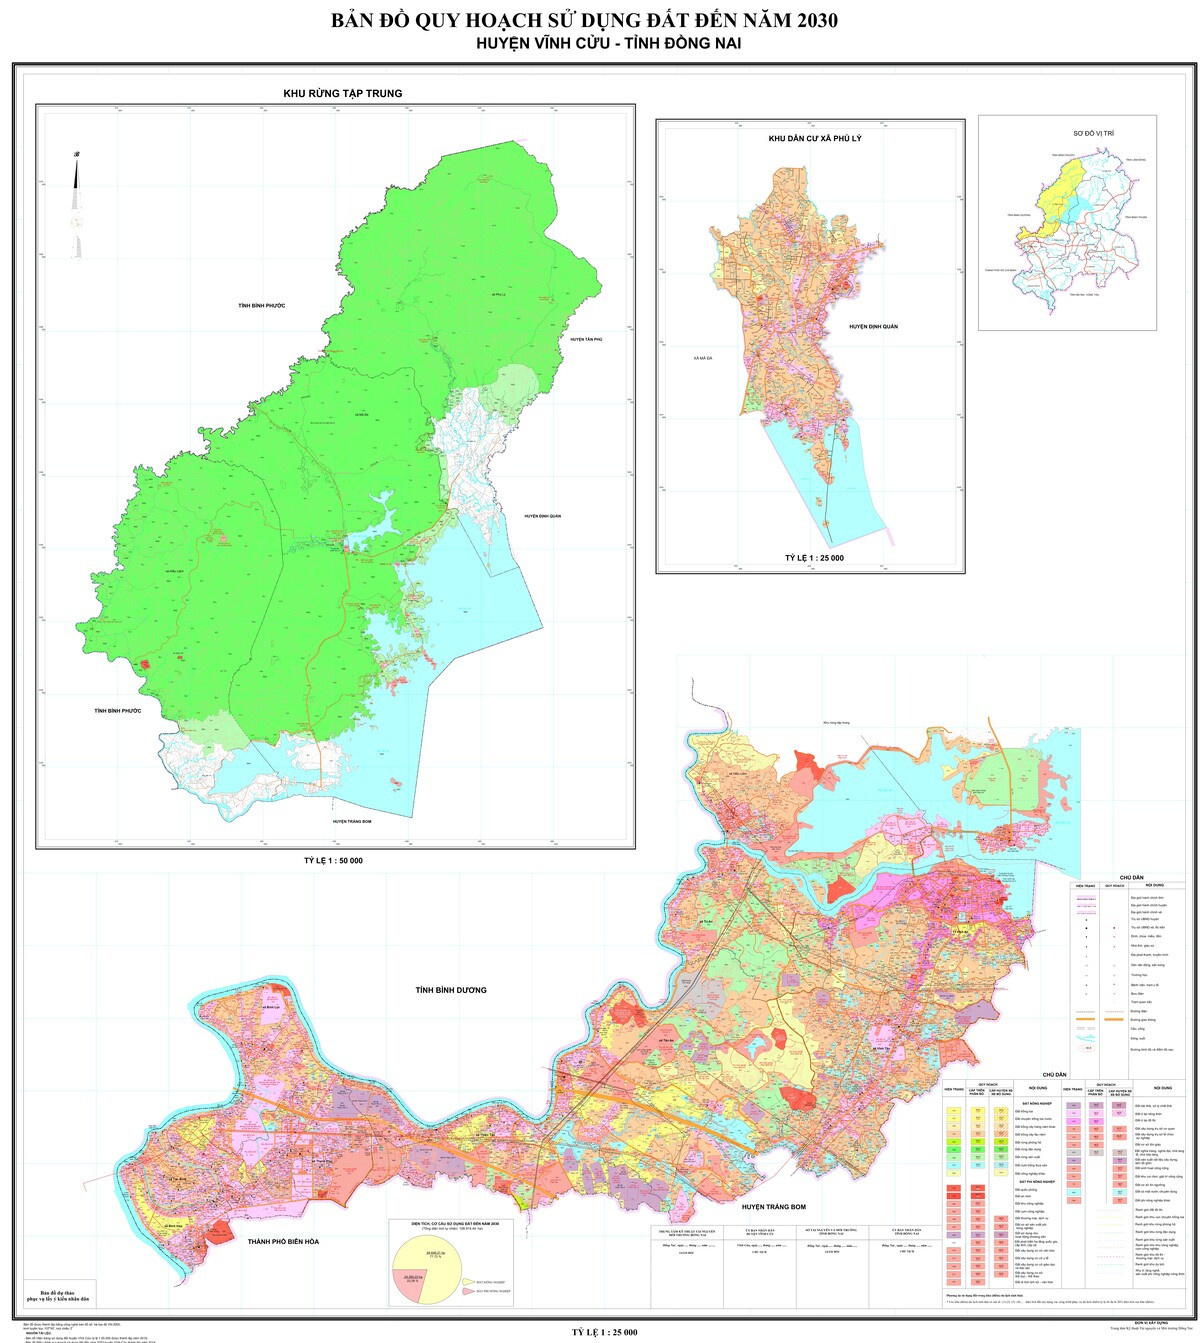 Bản đồ quy hoạch huyện Vĩnh Cửu